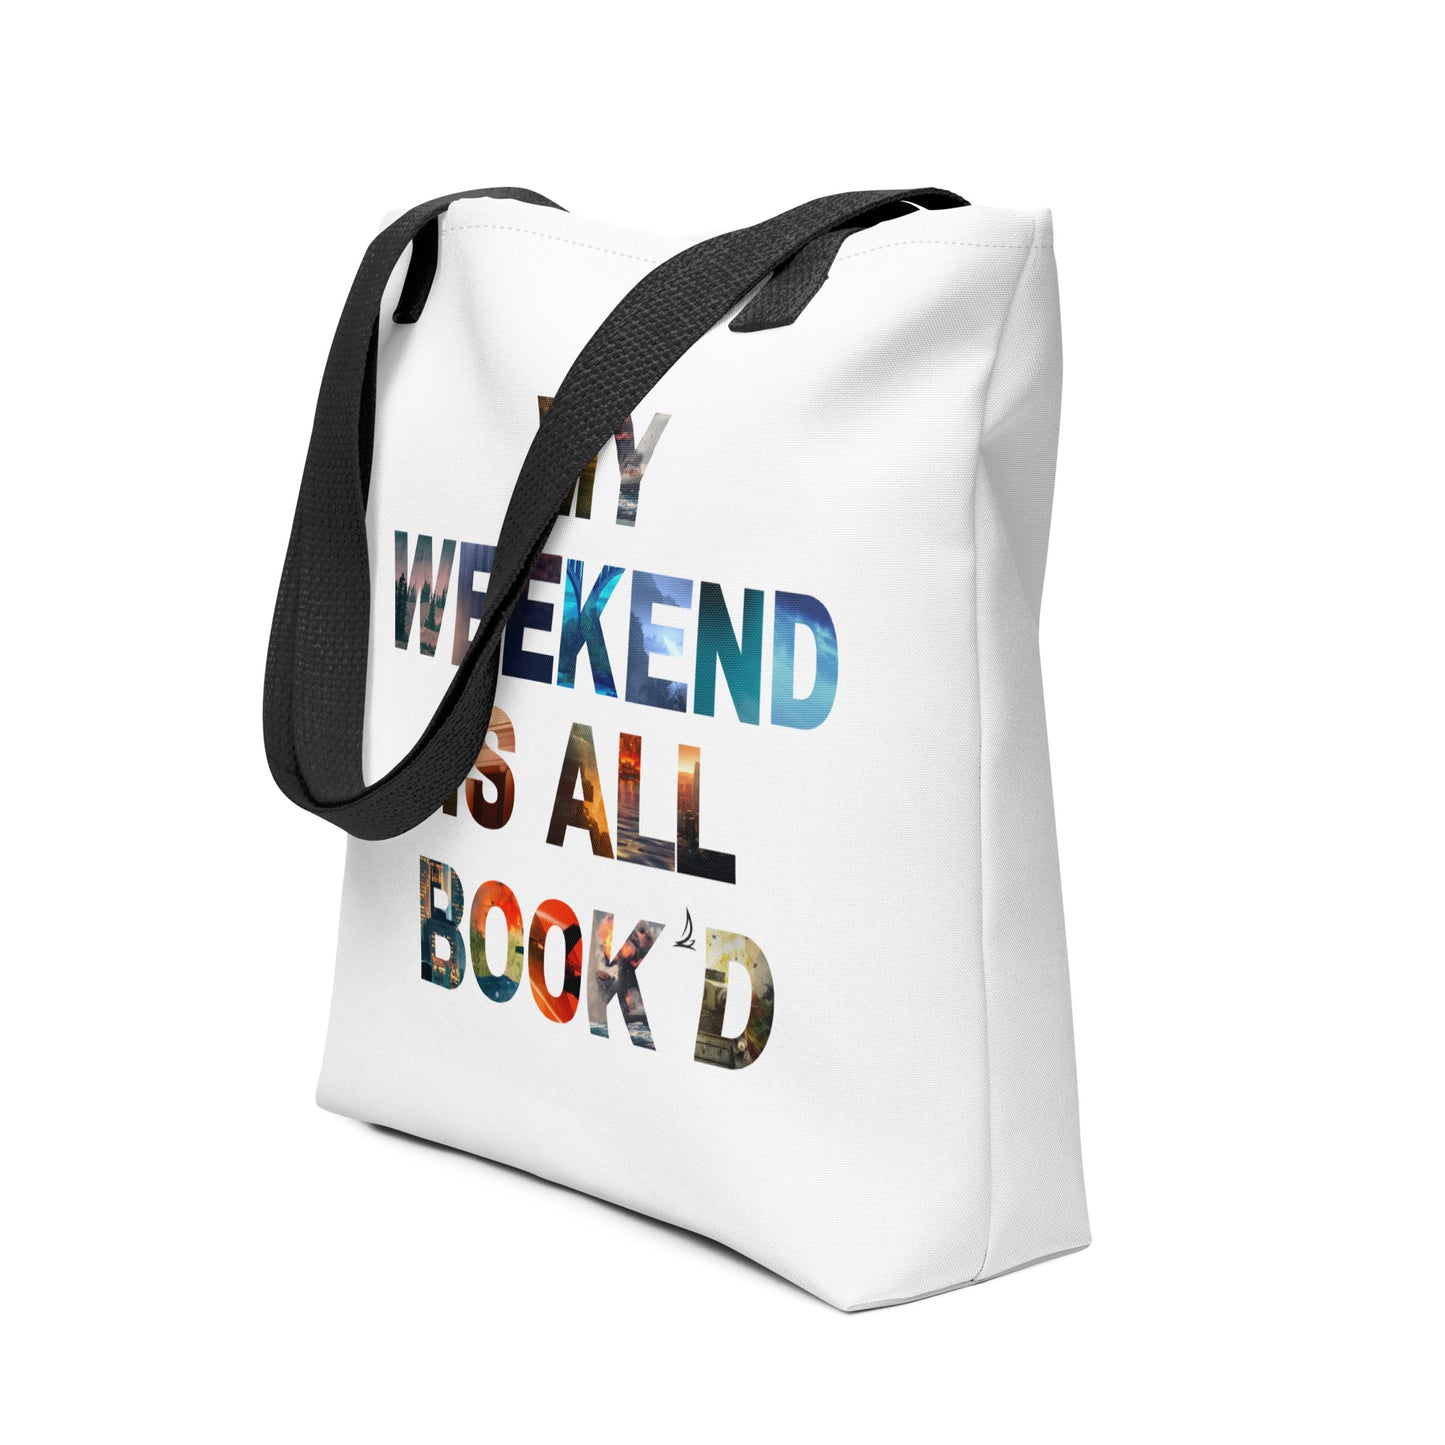 Weekend is Book'd | Tote bag